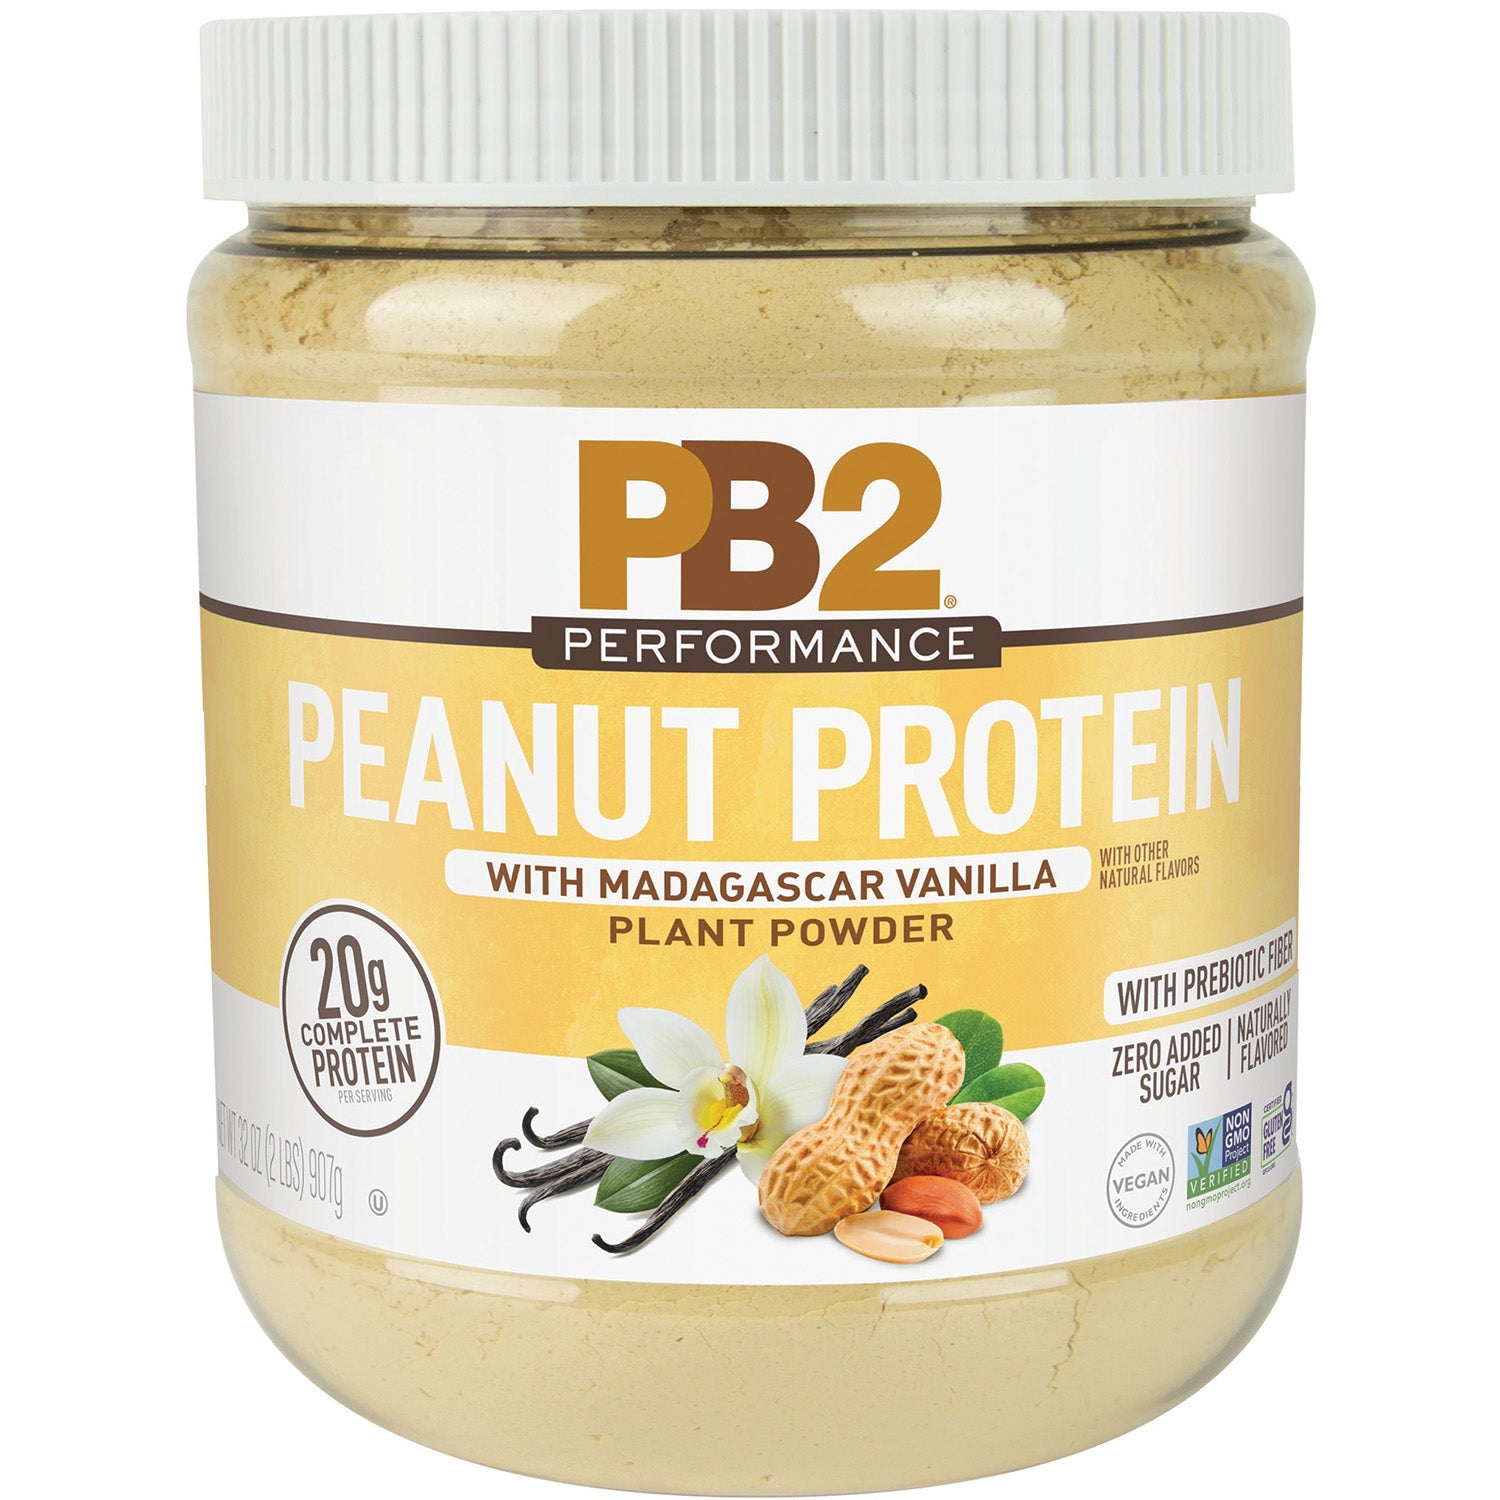 Poudre de protéine de performance PB2